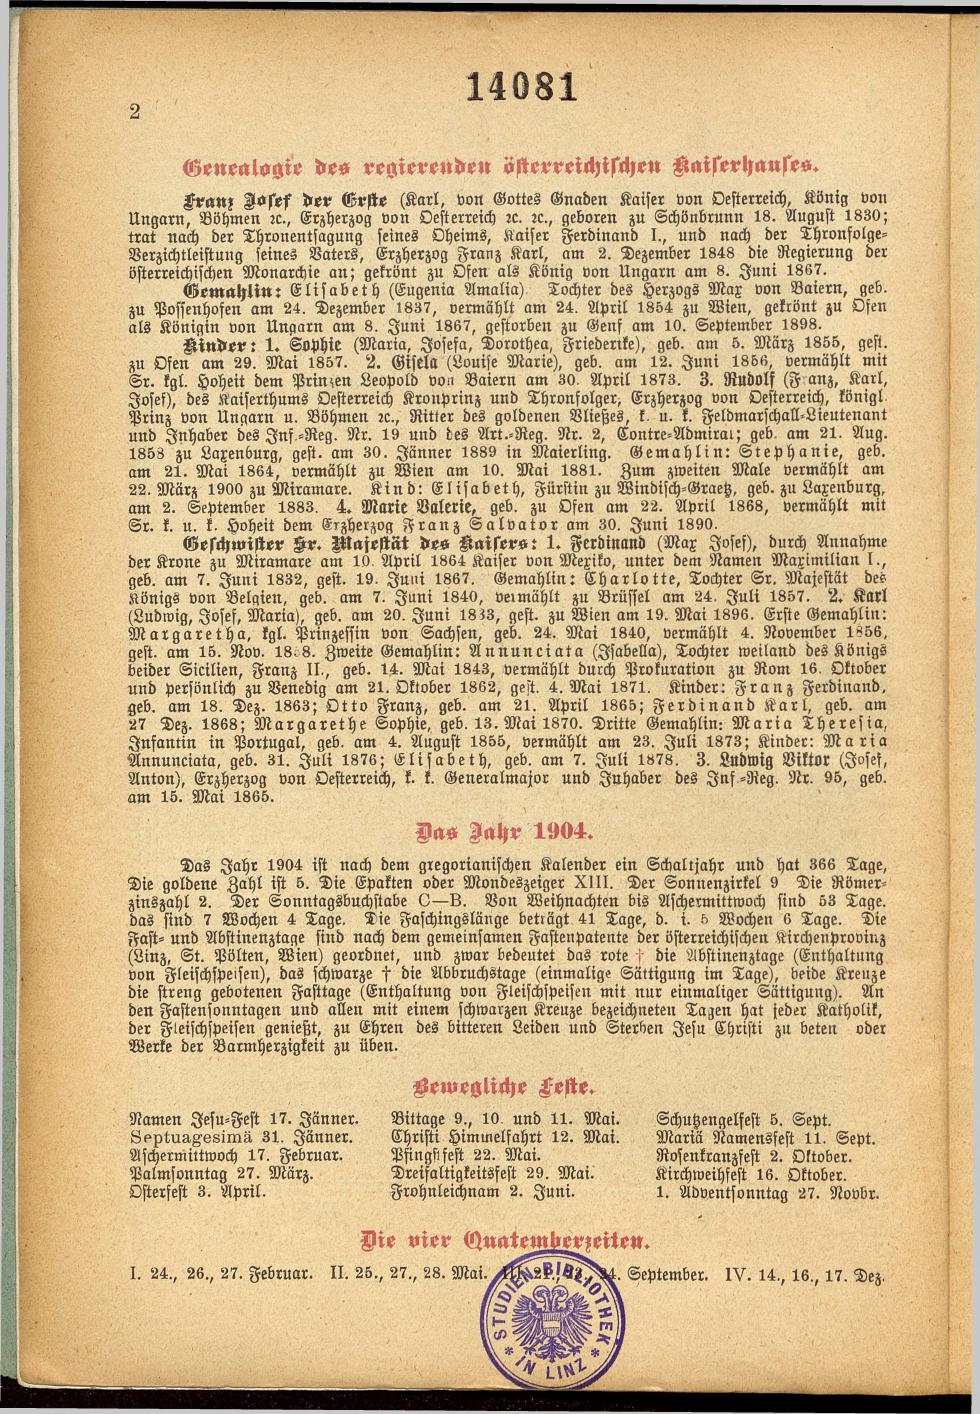 Illustrierter Braunauer-Kalender für das Jahr 1904 - Seite 6